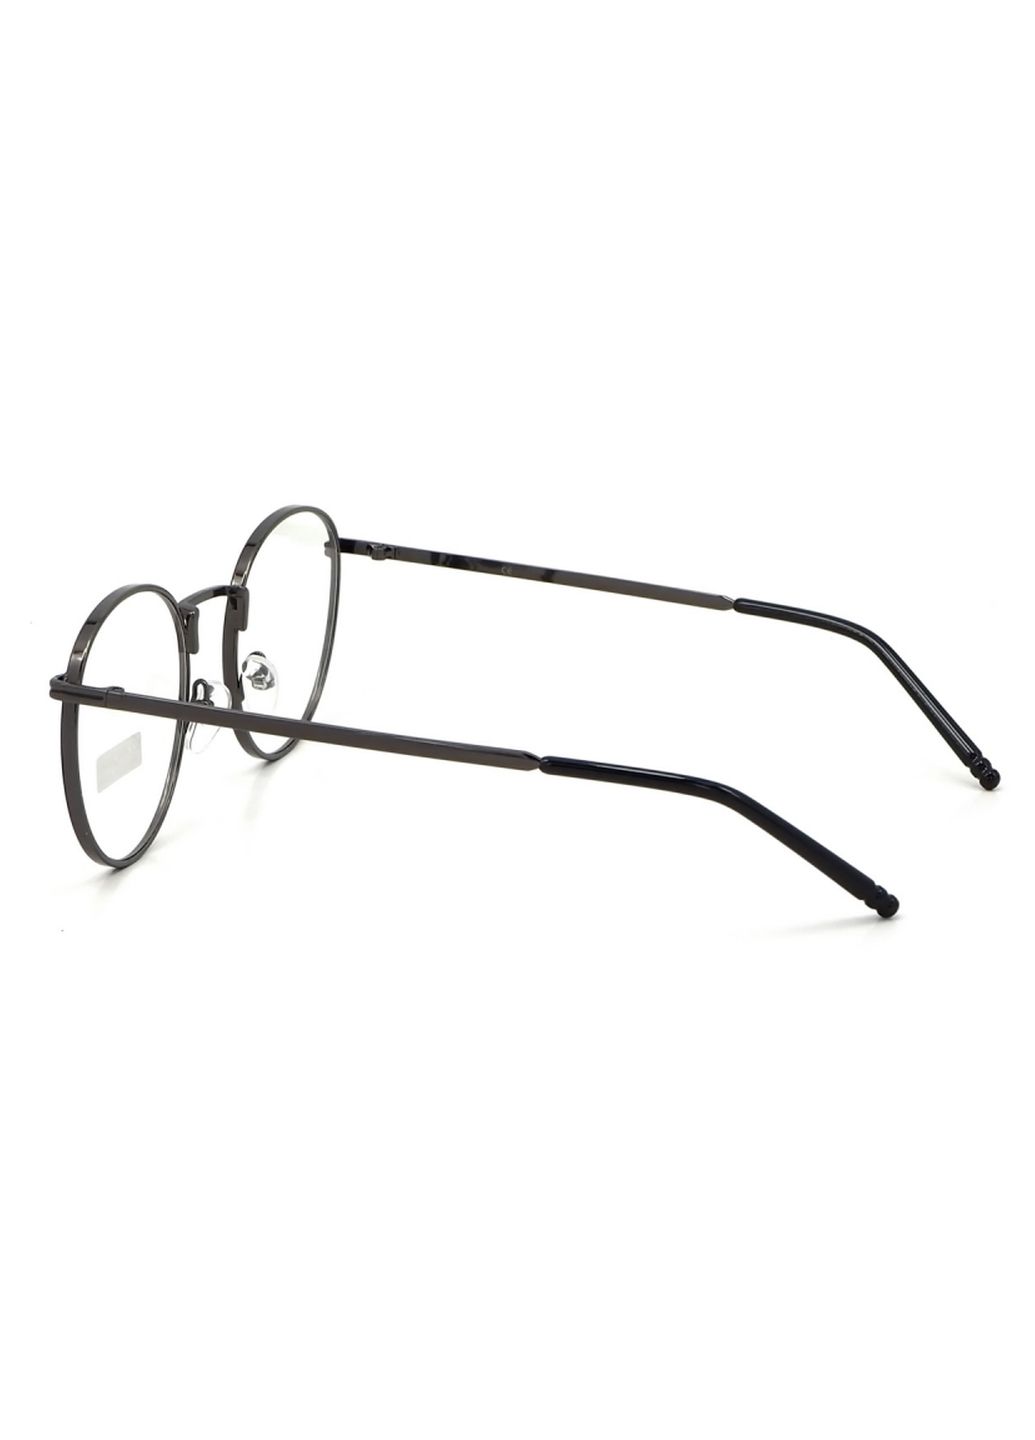 Купить Очки для работы за компьютером Cooper Glasses в серой оправе 124002 в интернет-магазине